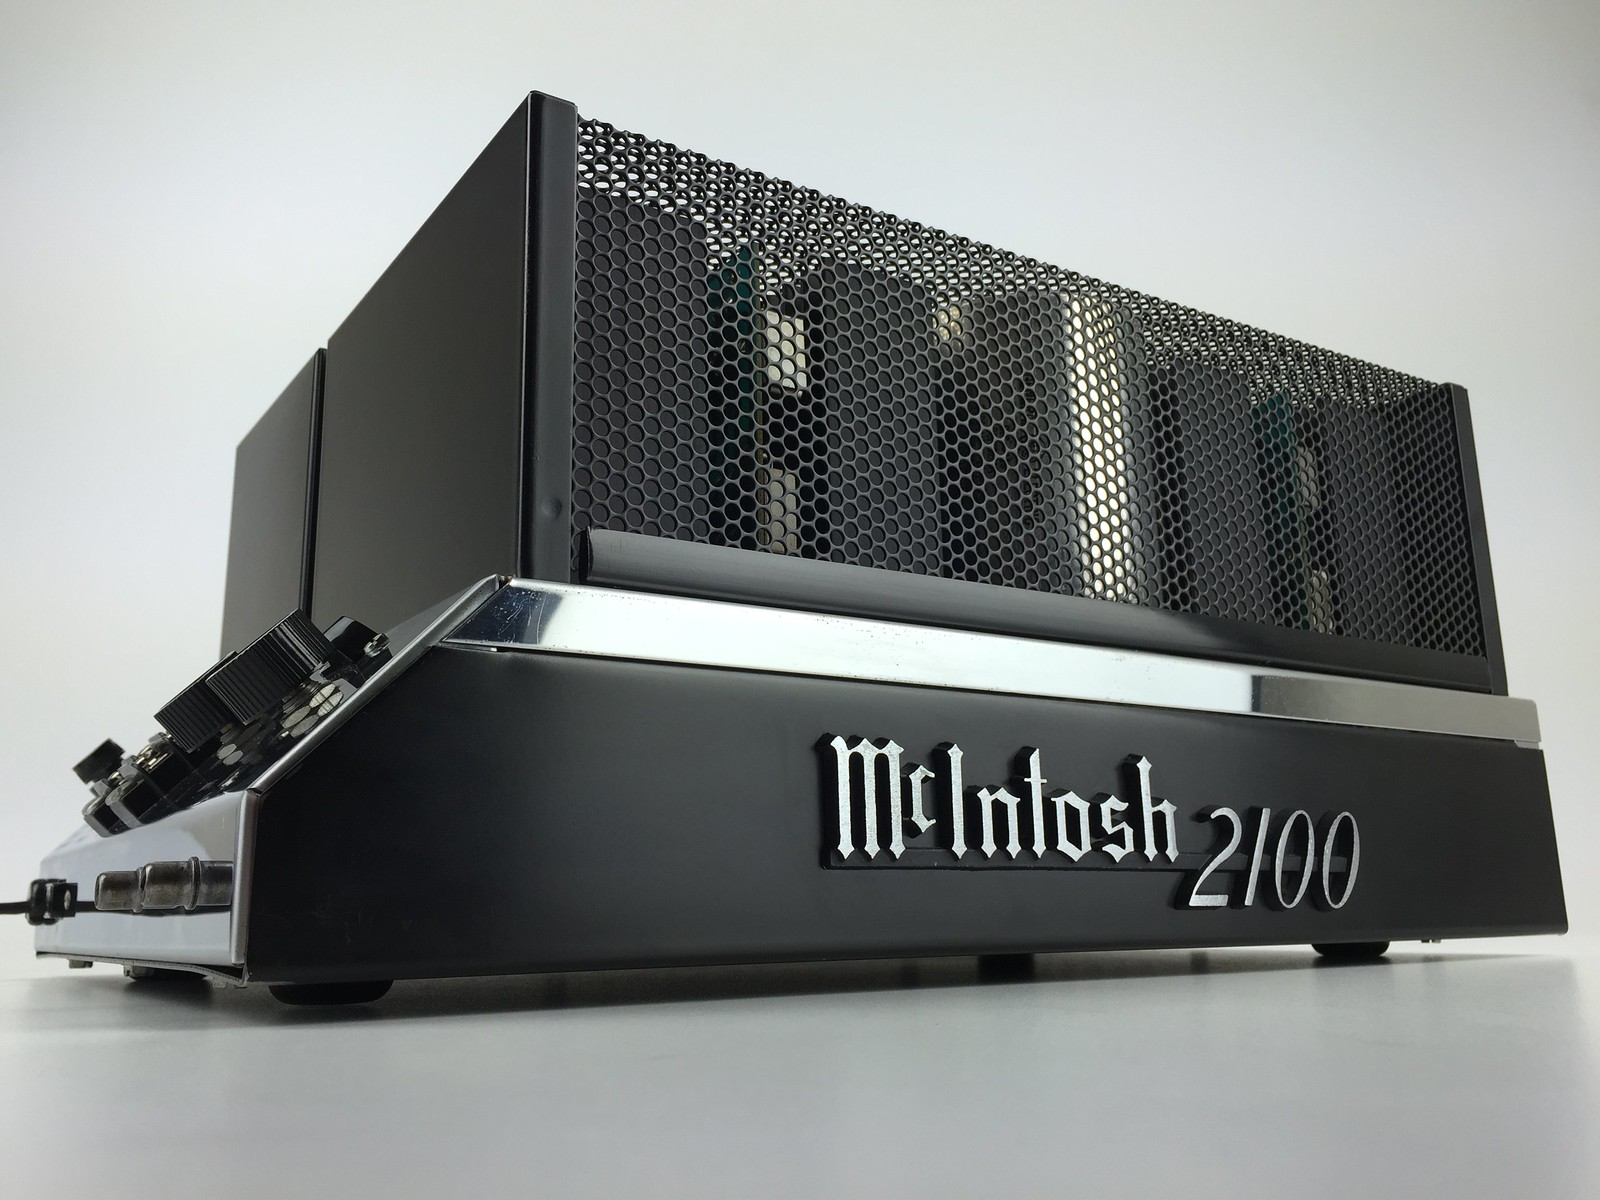 McIntosh MC 2100